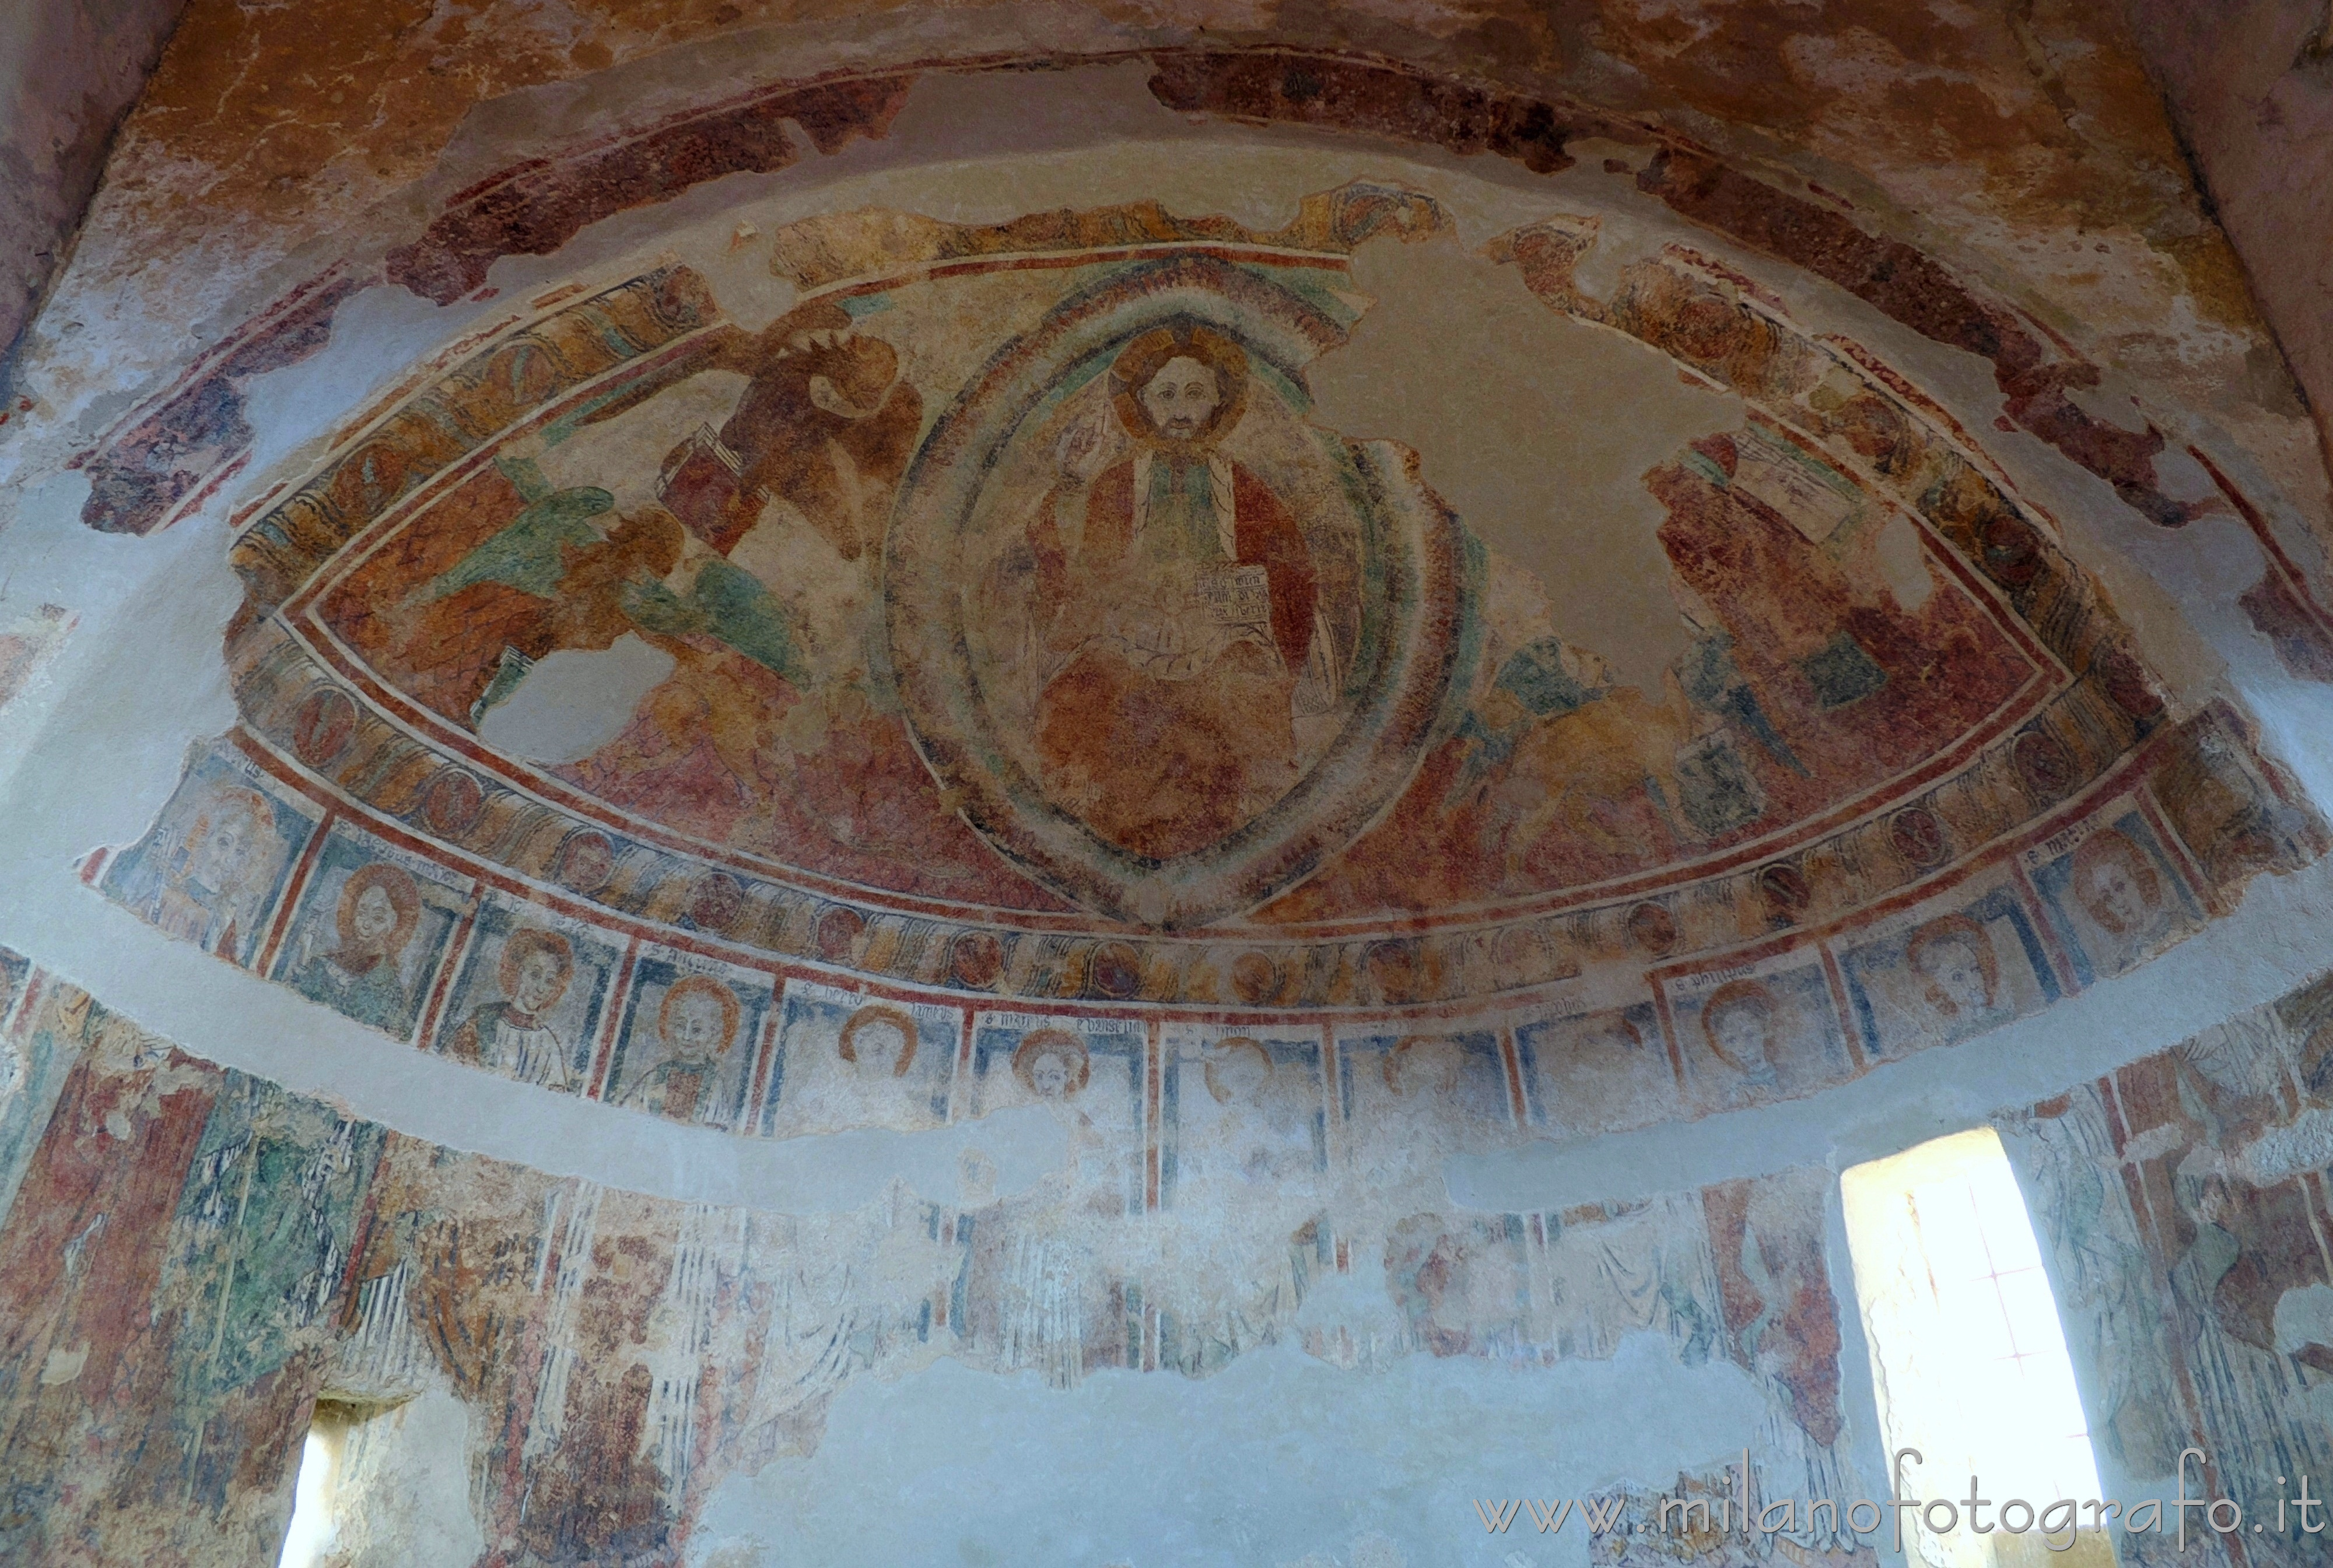 Netro (Biella, Italy): Frescoes in the central apse of the Cemetery church of Santa Maria Assunta - Netro (Biella, Italy)